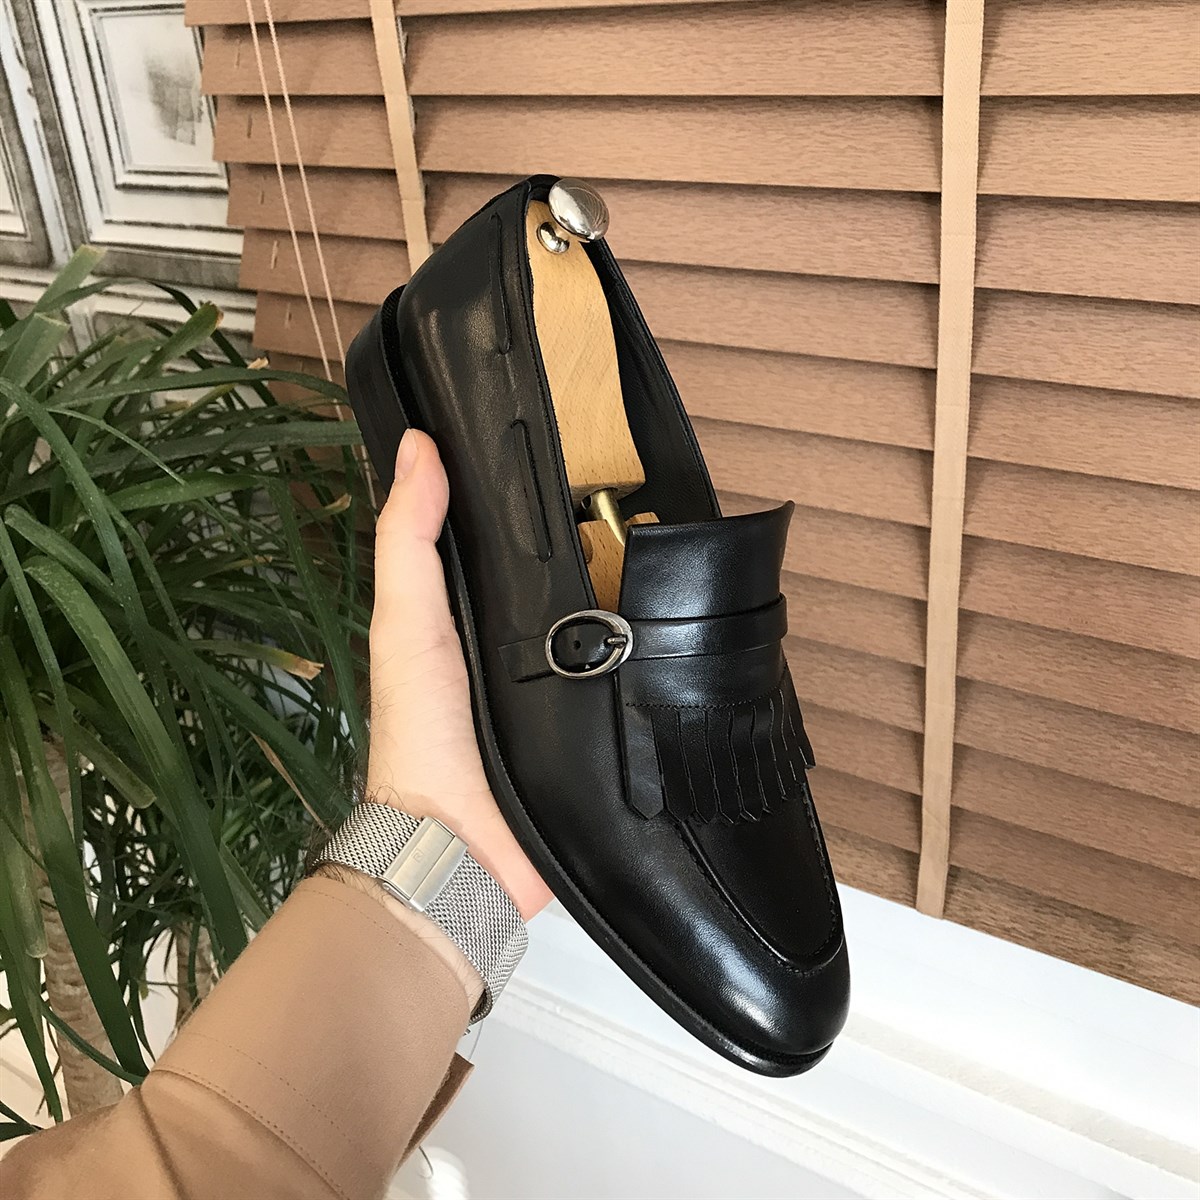 İtalyan stil iç dış naturel deri erkek ayakkabı Siyah T5002